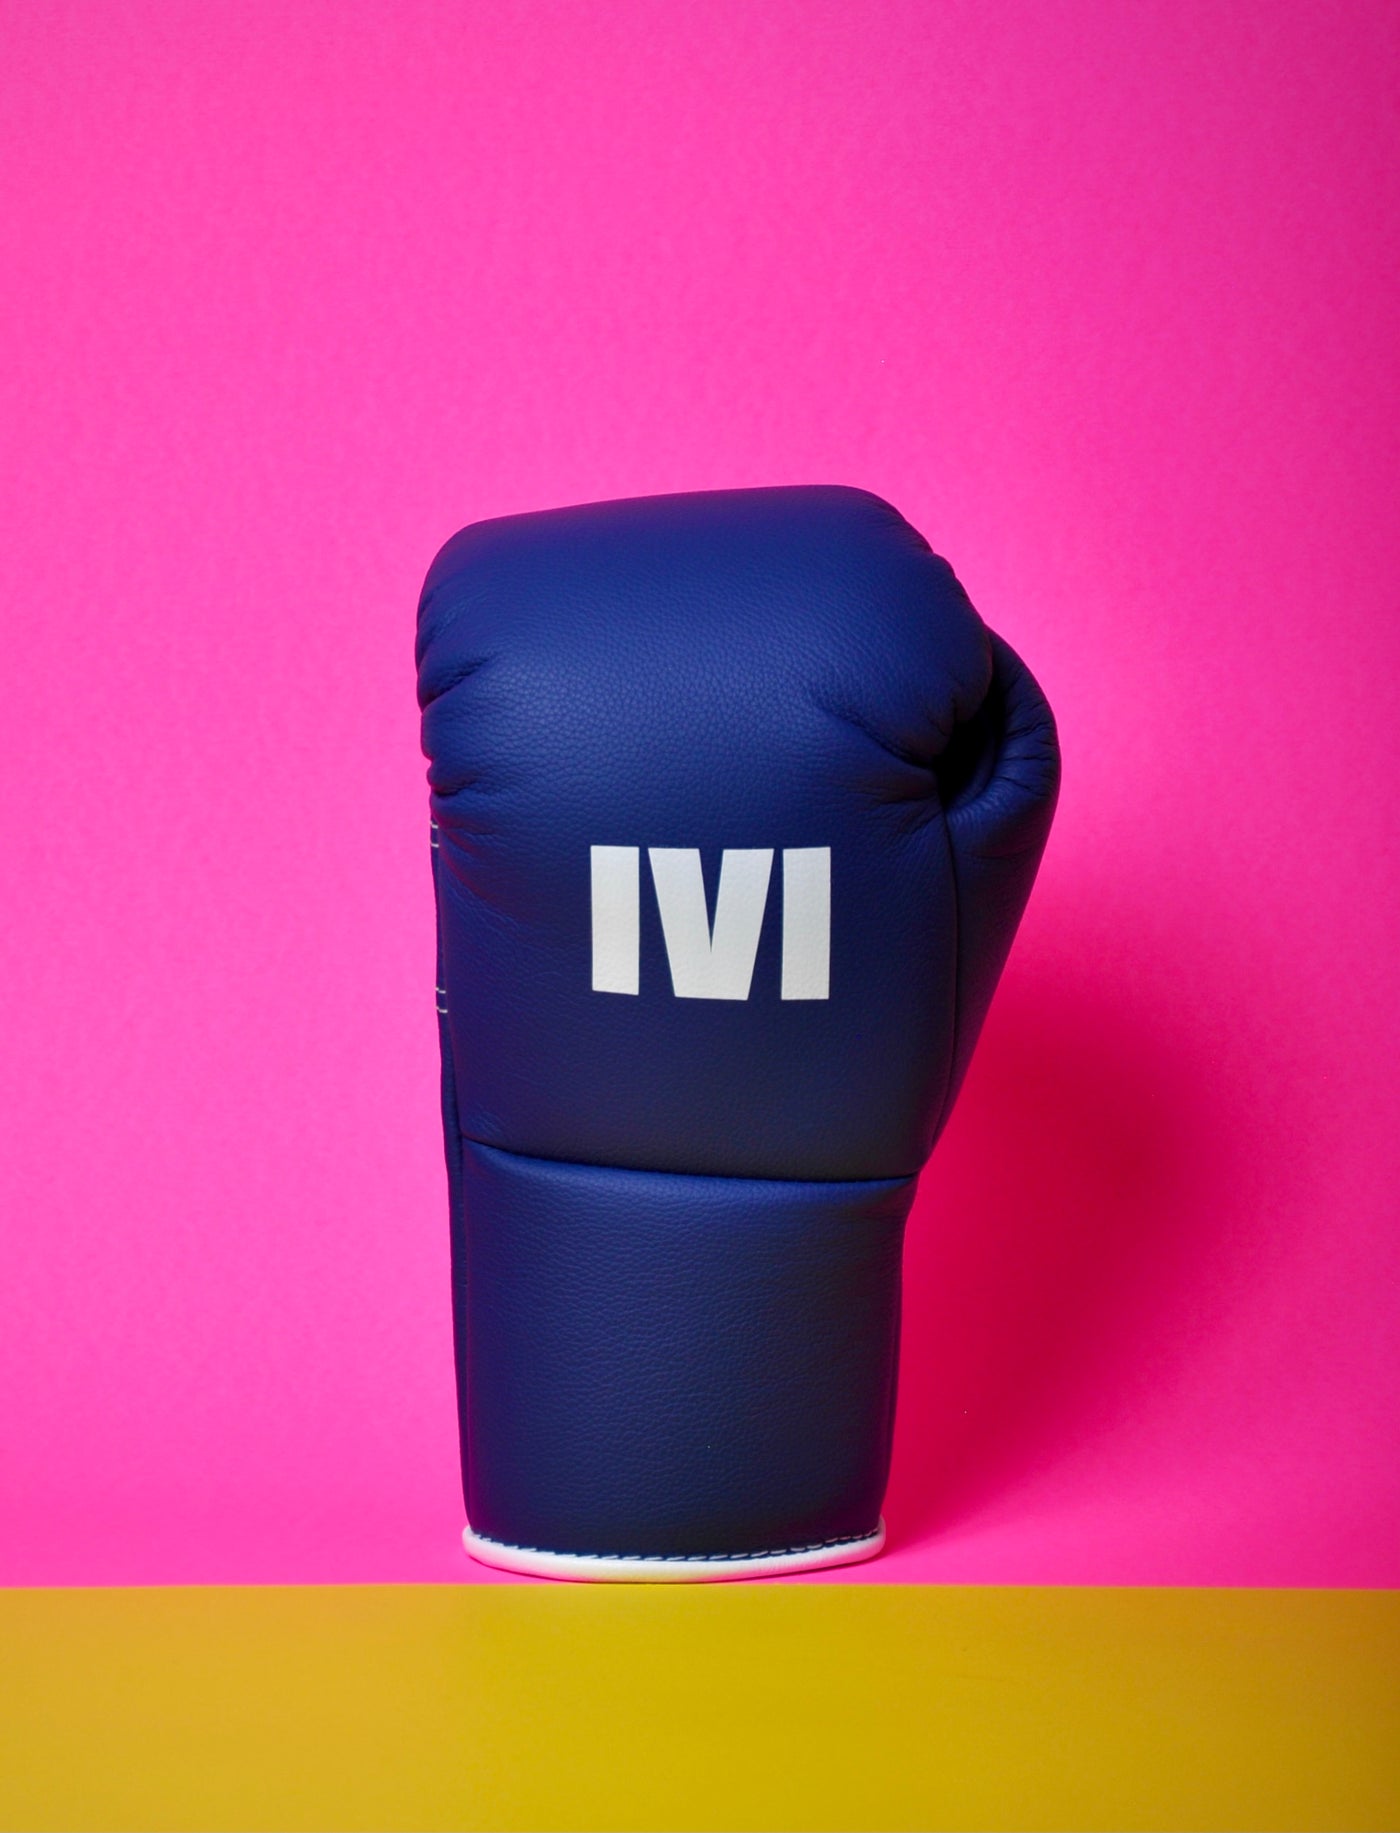 1v1_fight_gloves